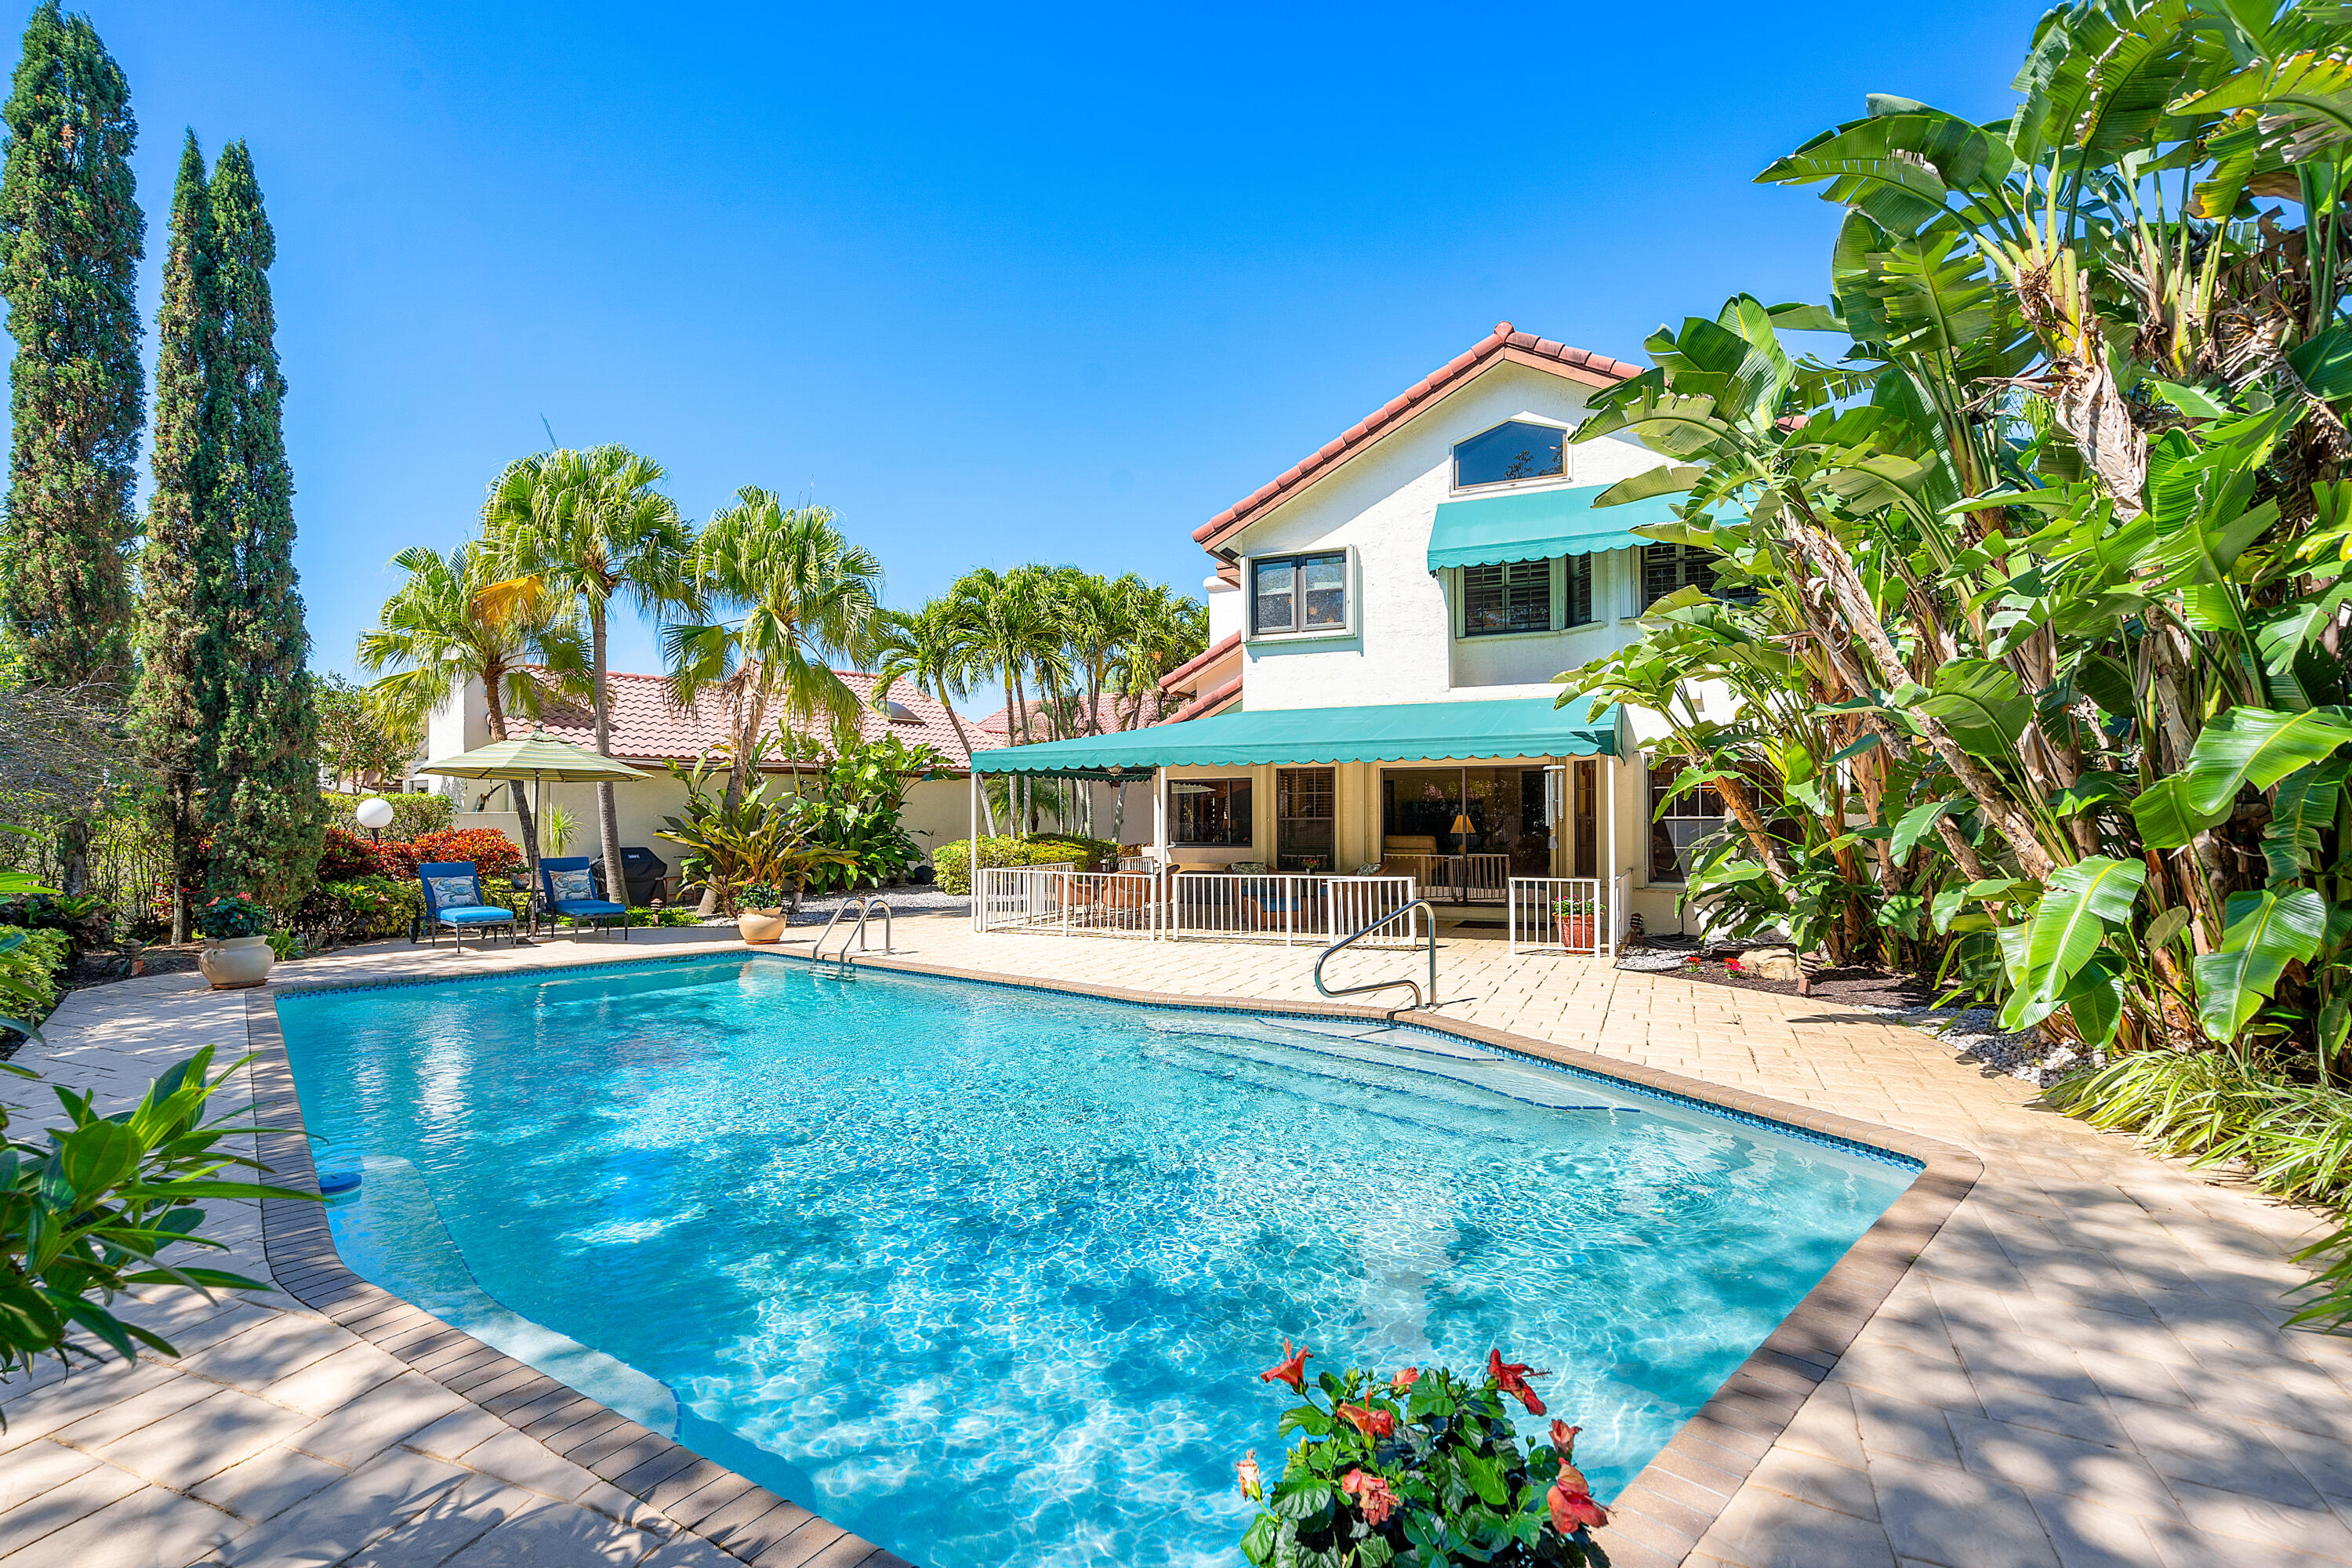 21766 Club Villa Terrace, Boca Raton, Palm Beach County, Florida - 4 Bedrooms  
3 Bathrooms - 